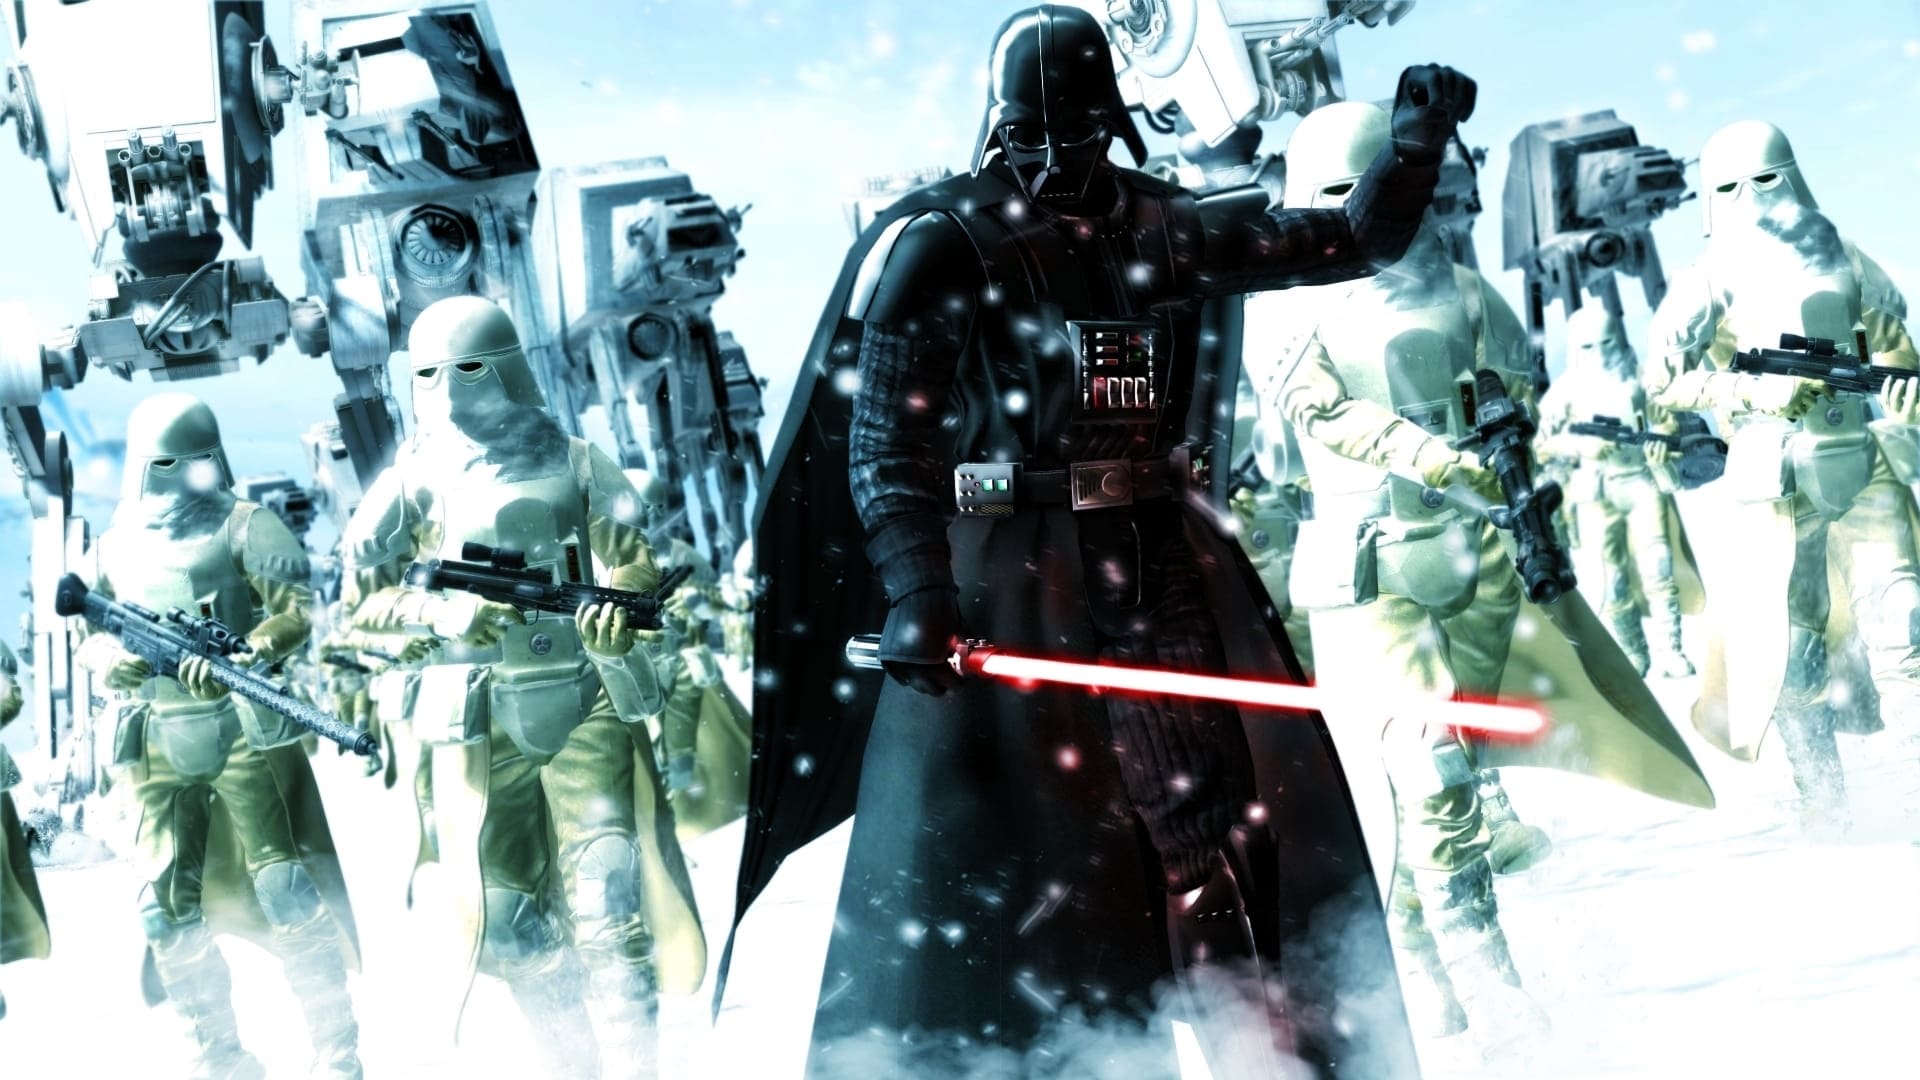 Image du film Star Wars Episode V : l'Empire contre-attaque 74py2ntos99ggsthv663wvdzu8pjpg